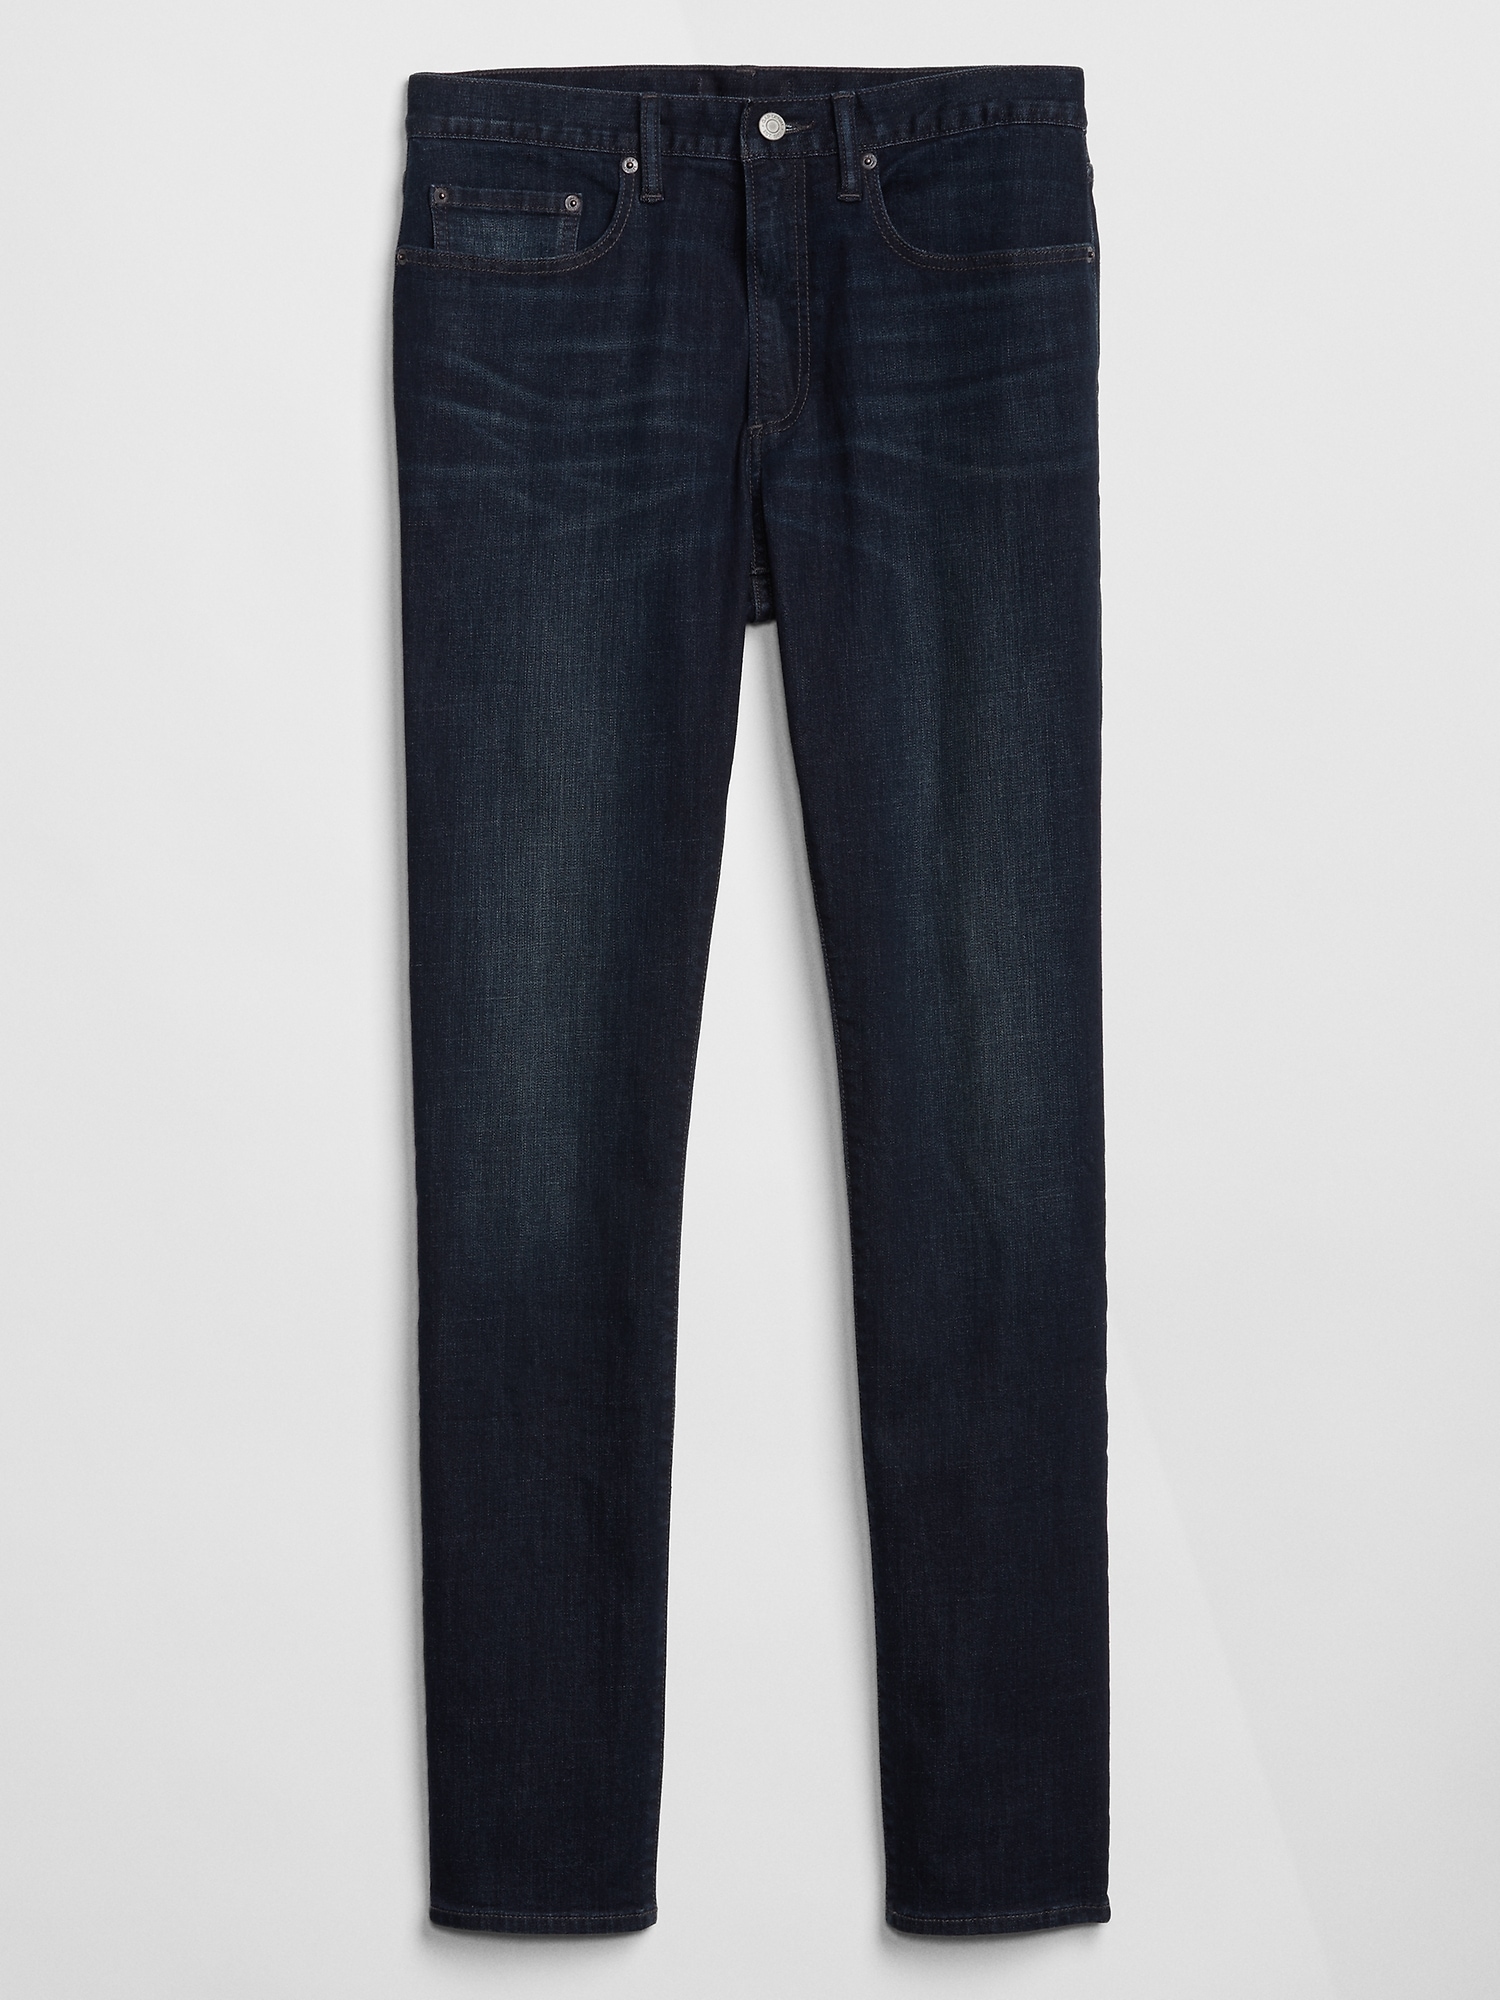 Slim GapFlex Soft Wear Jeans with Washwell | Gap Factory